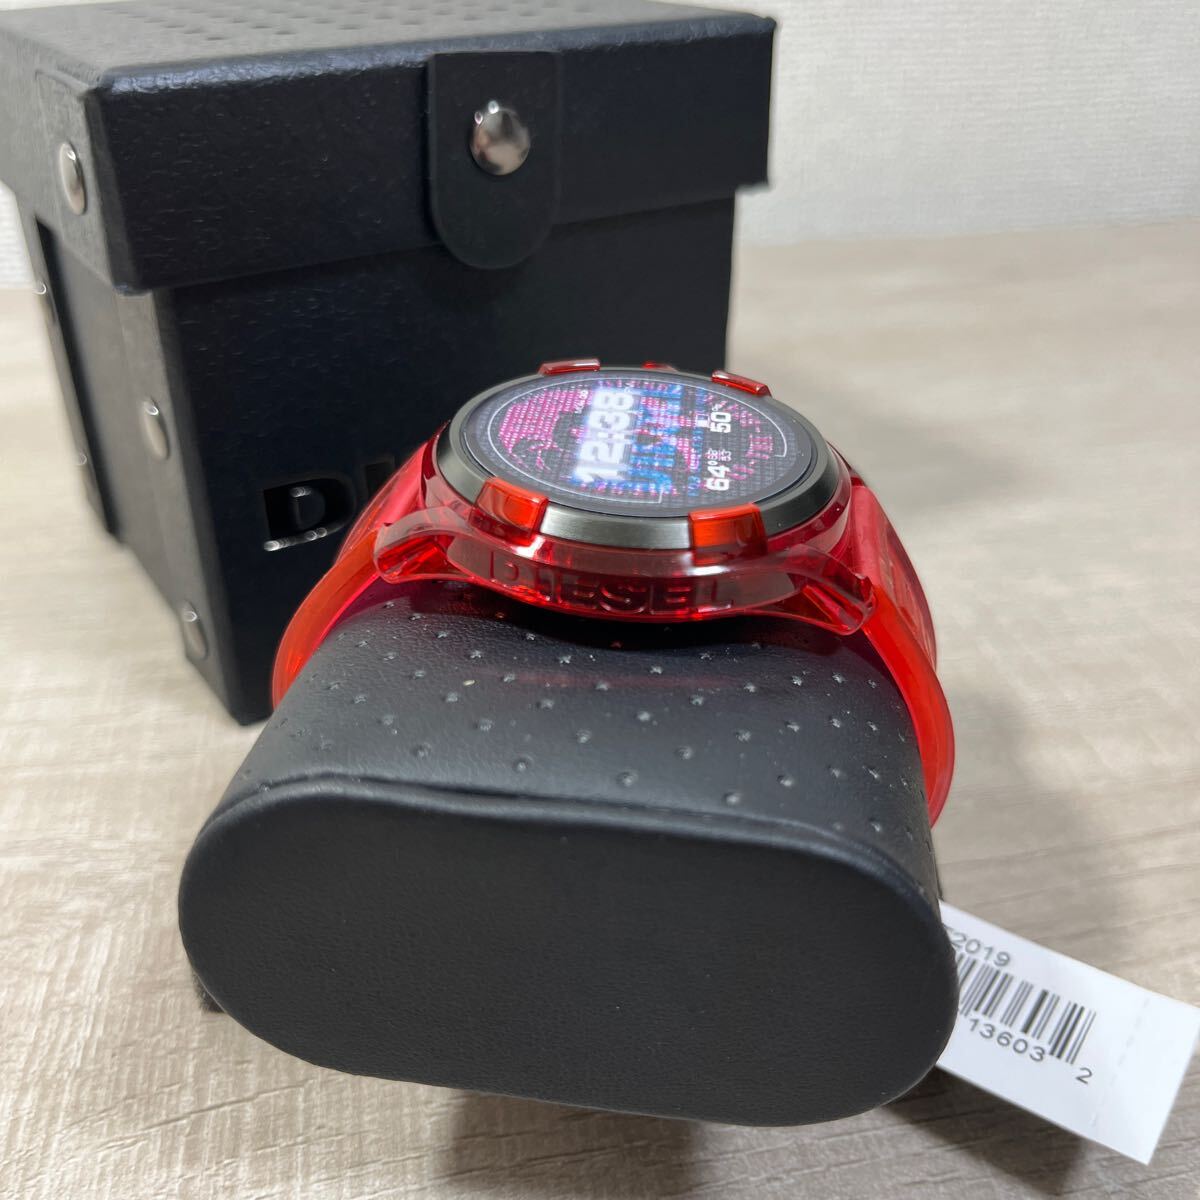 1 иен старт прямые продажи новый товар не использовался DIESEL FADELITE смарт-часы дизель DIESEL ON измеритель пульса GPS Google красный наручные часы 